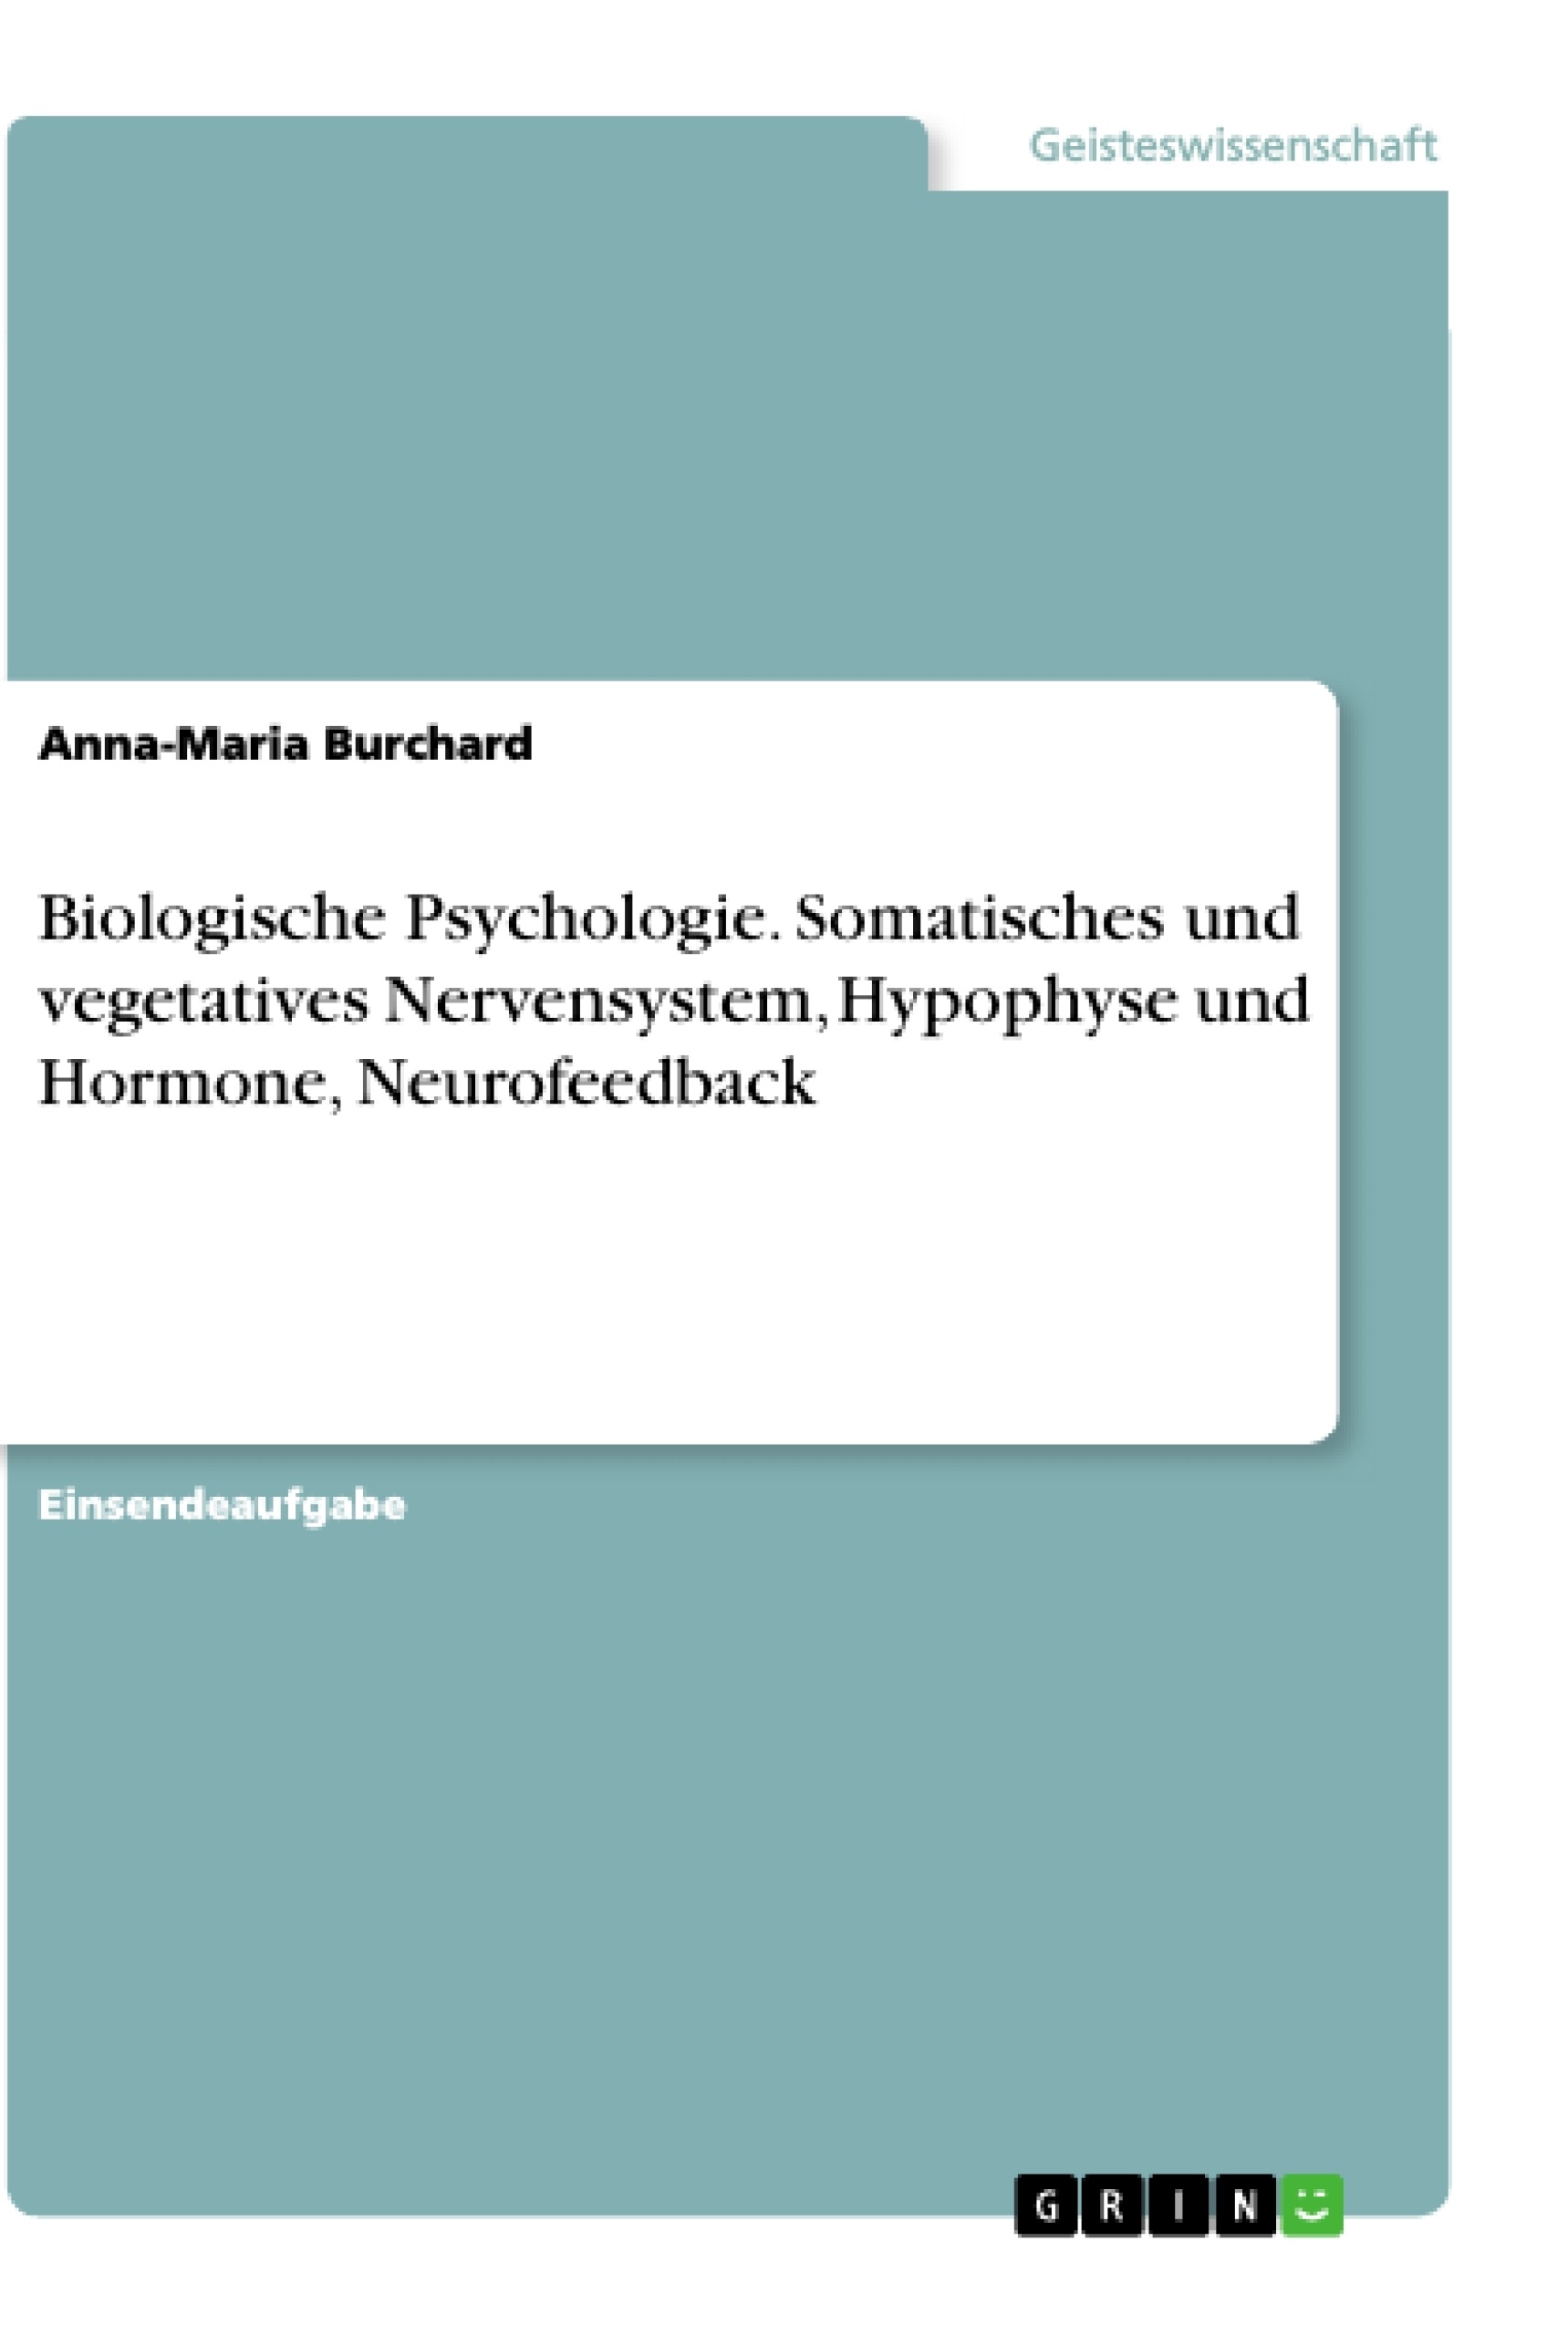 Título: Biologische Psychologie. Somatisches und vegetatives Nervensystem, Hypophyse und Hormone, Neurofeedback